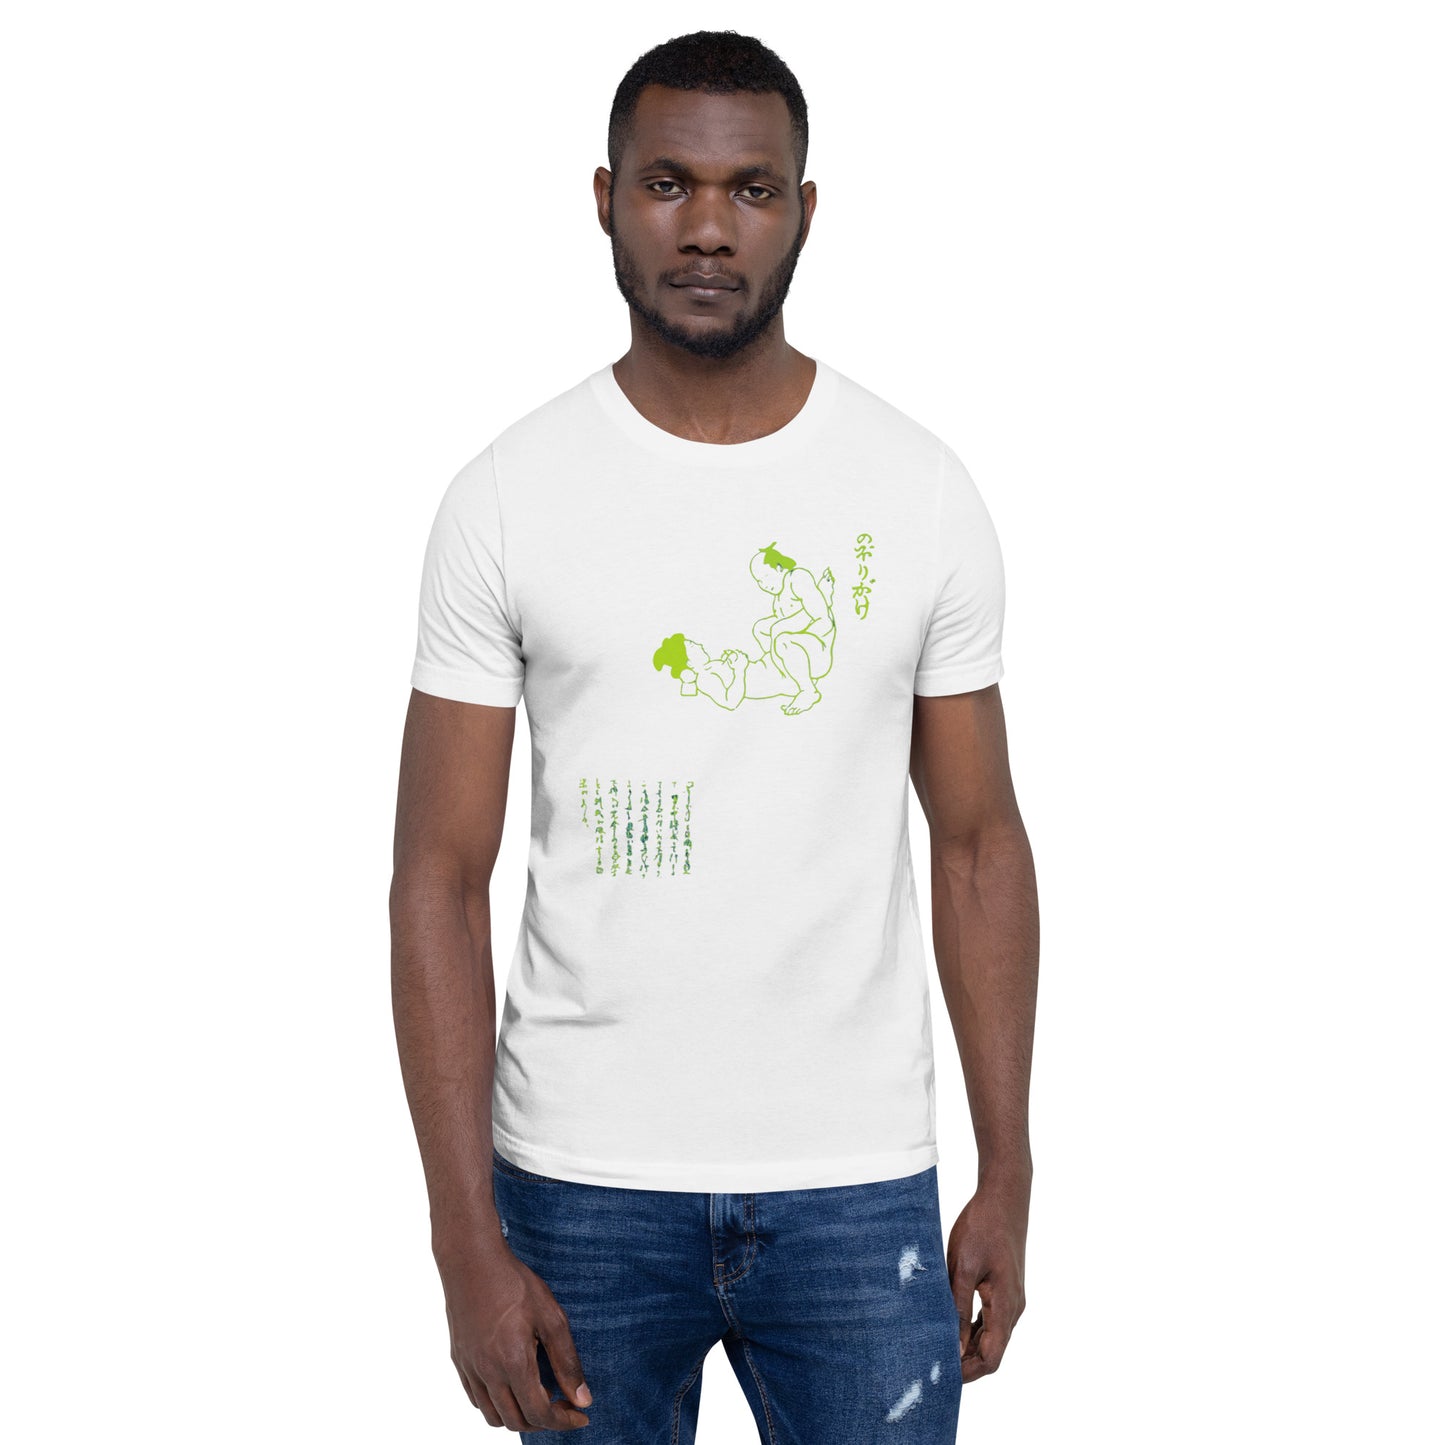 Unisex t-shirt "20 NOBORI GAKE" White